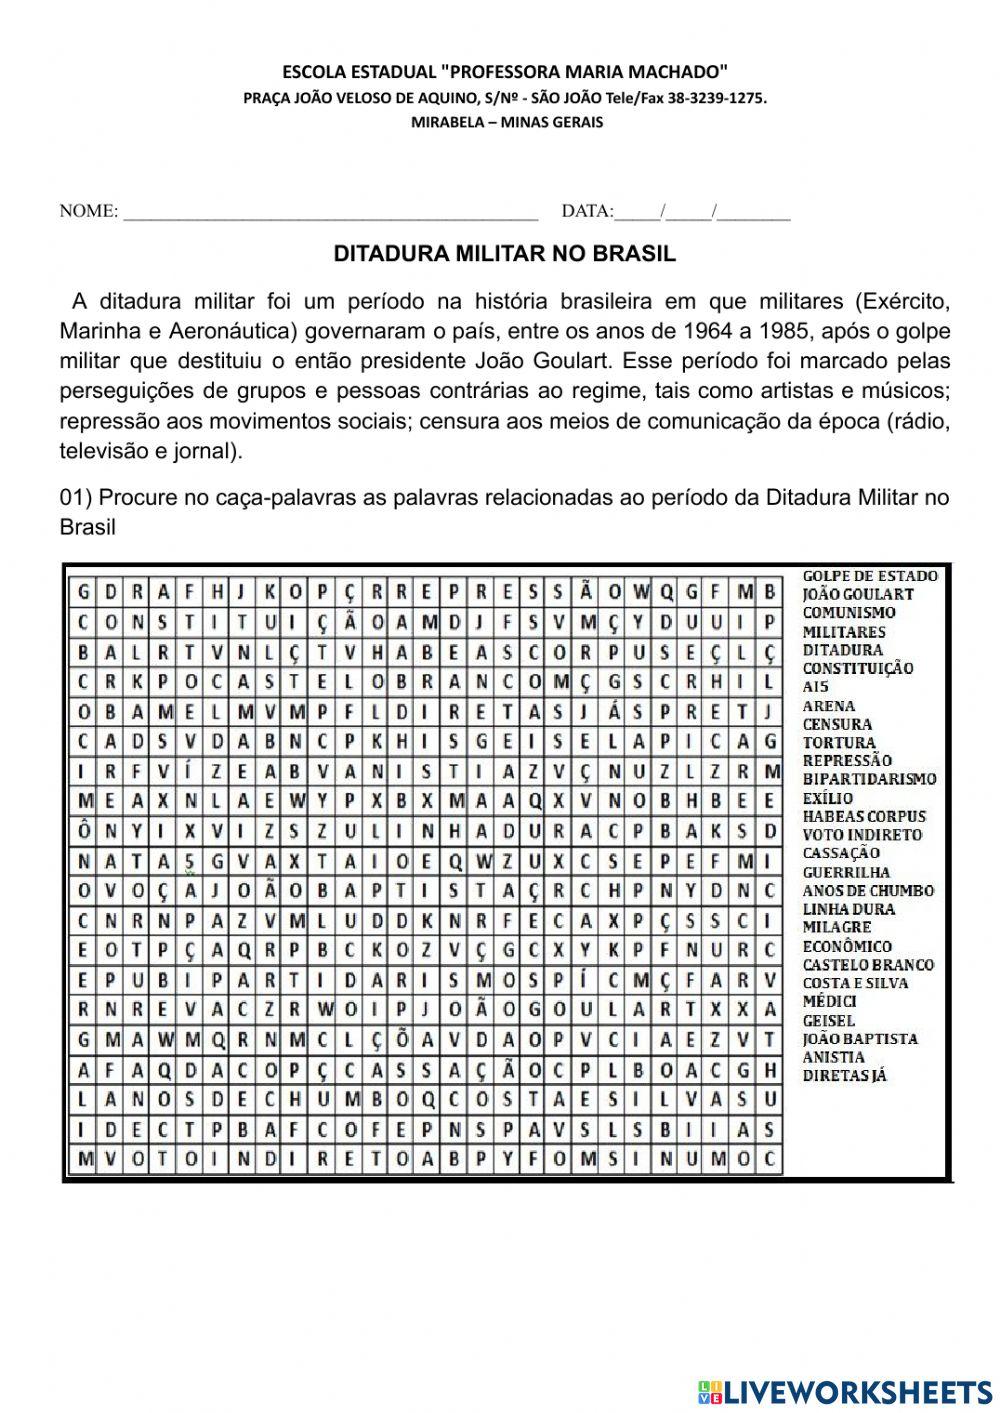 Baixe e imprima caça-palavras sobre a história da Folha - 27/02/2021 -  Folha 100 anos - Folha